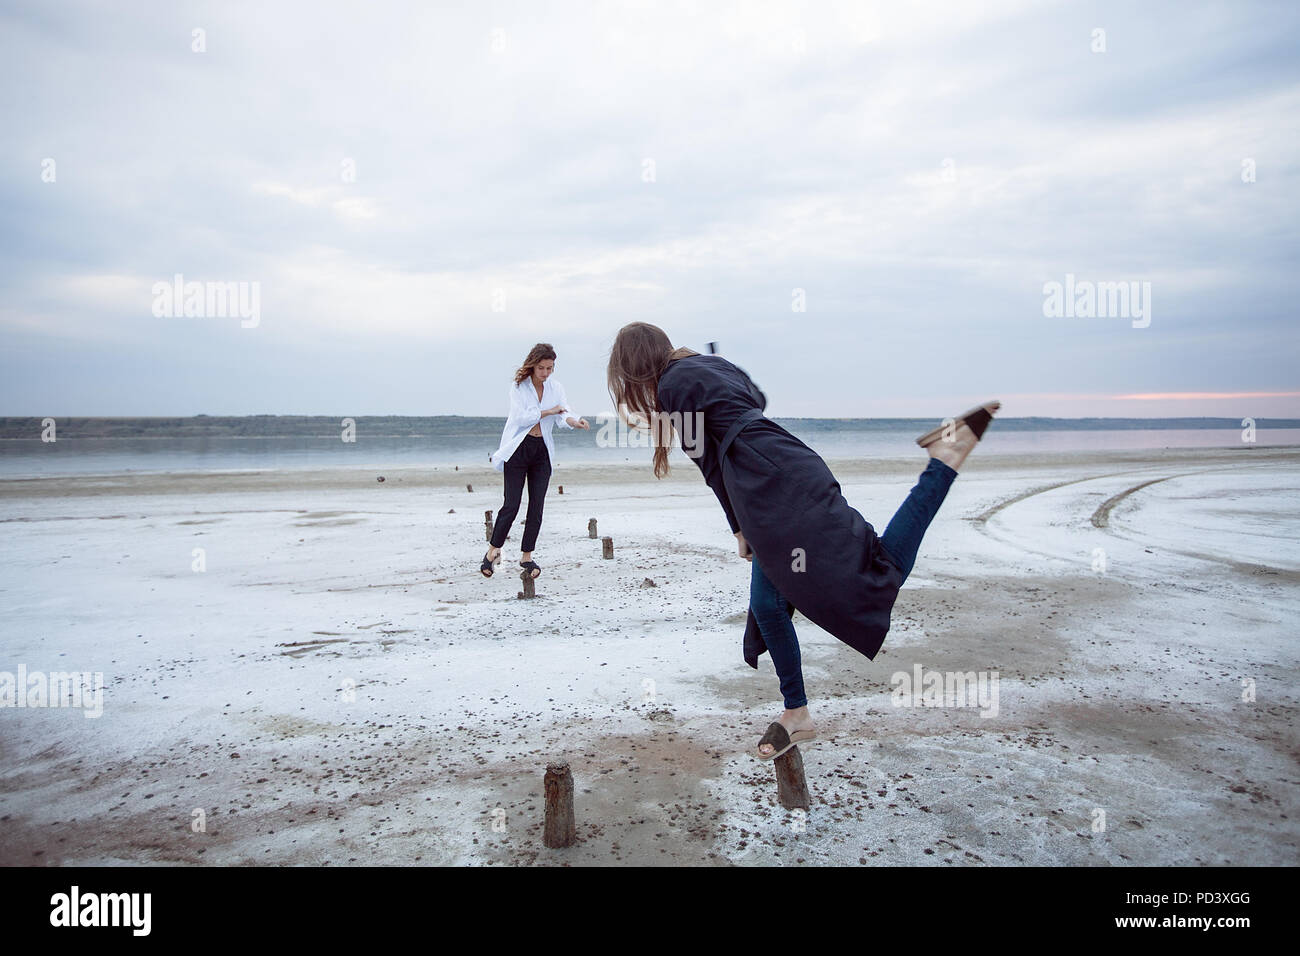 Women balancing on wooden stumps on beach, Odessa, Ukraine Stock Photo